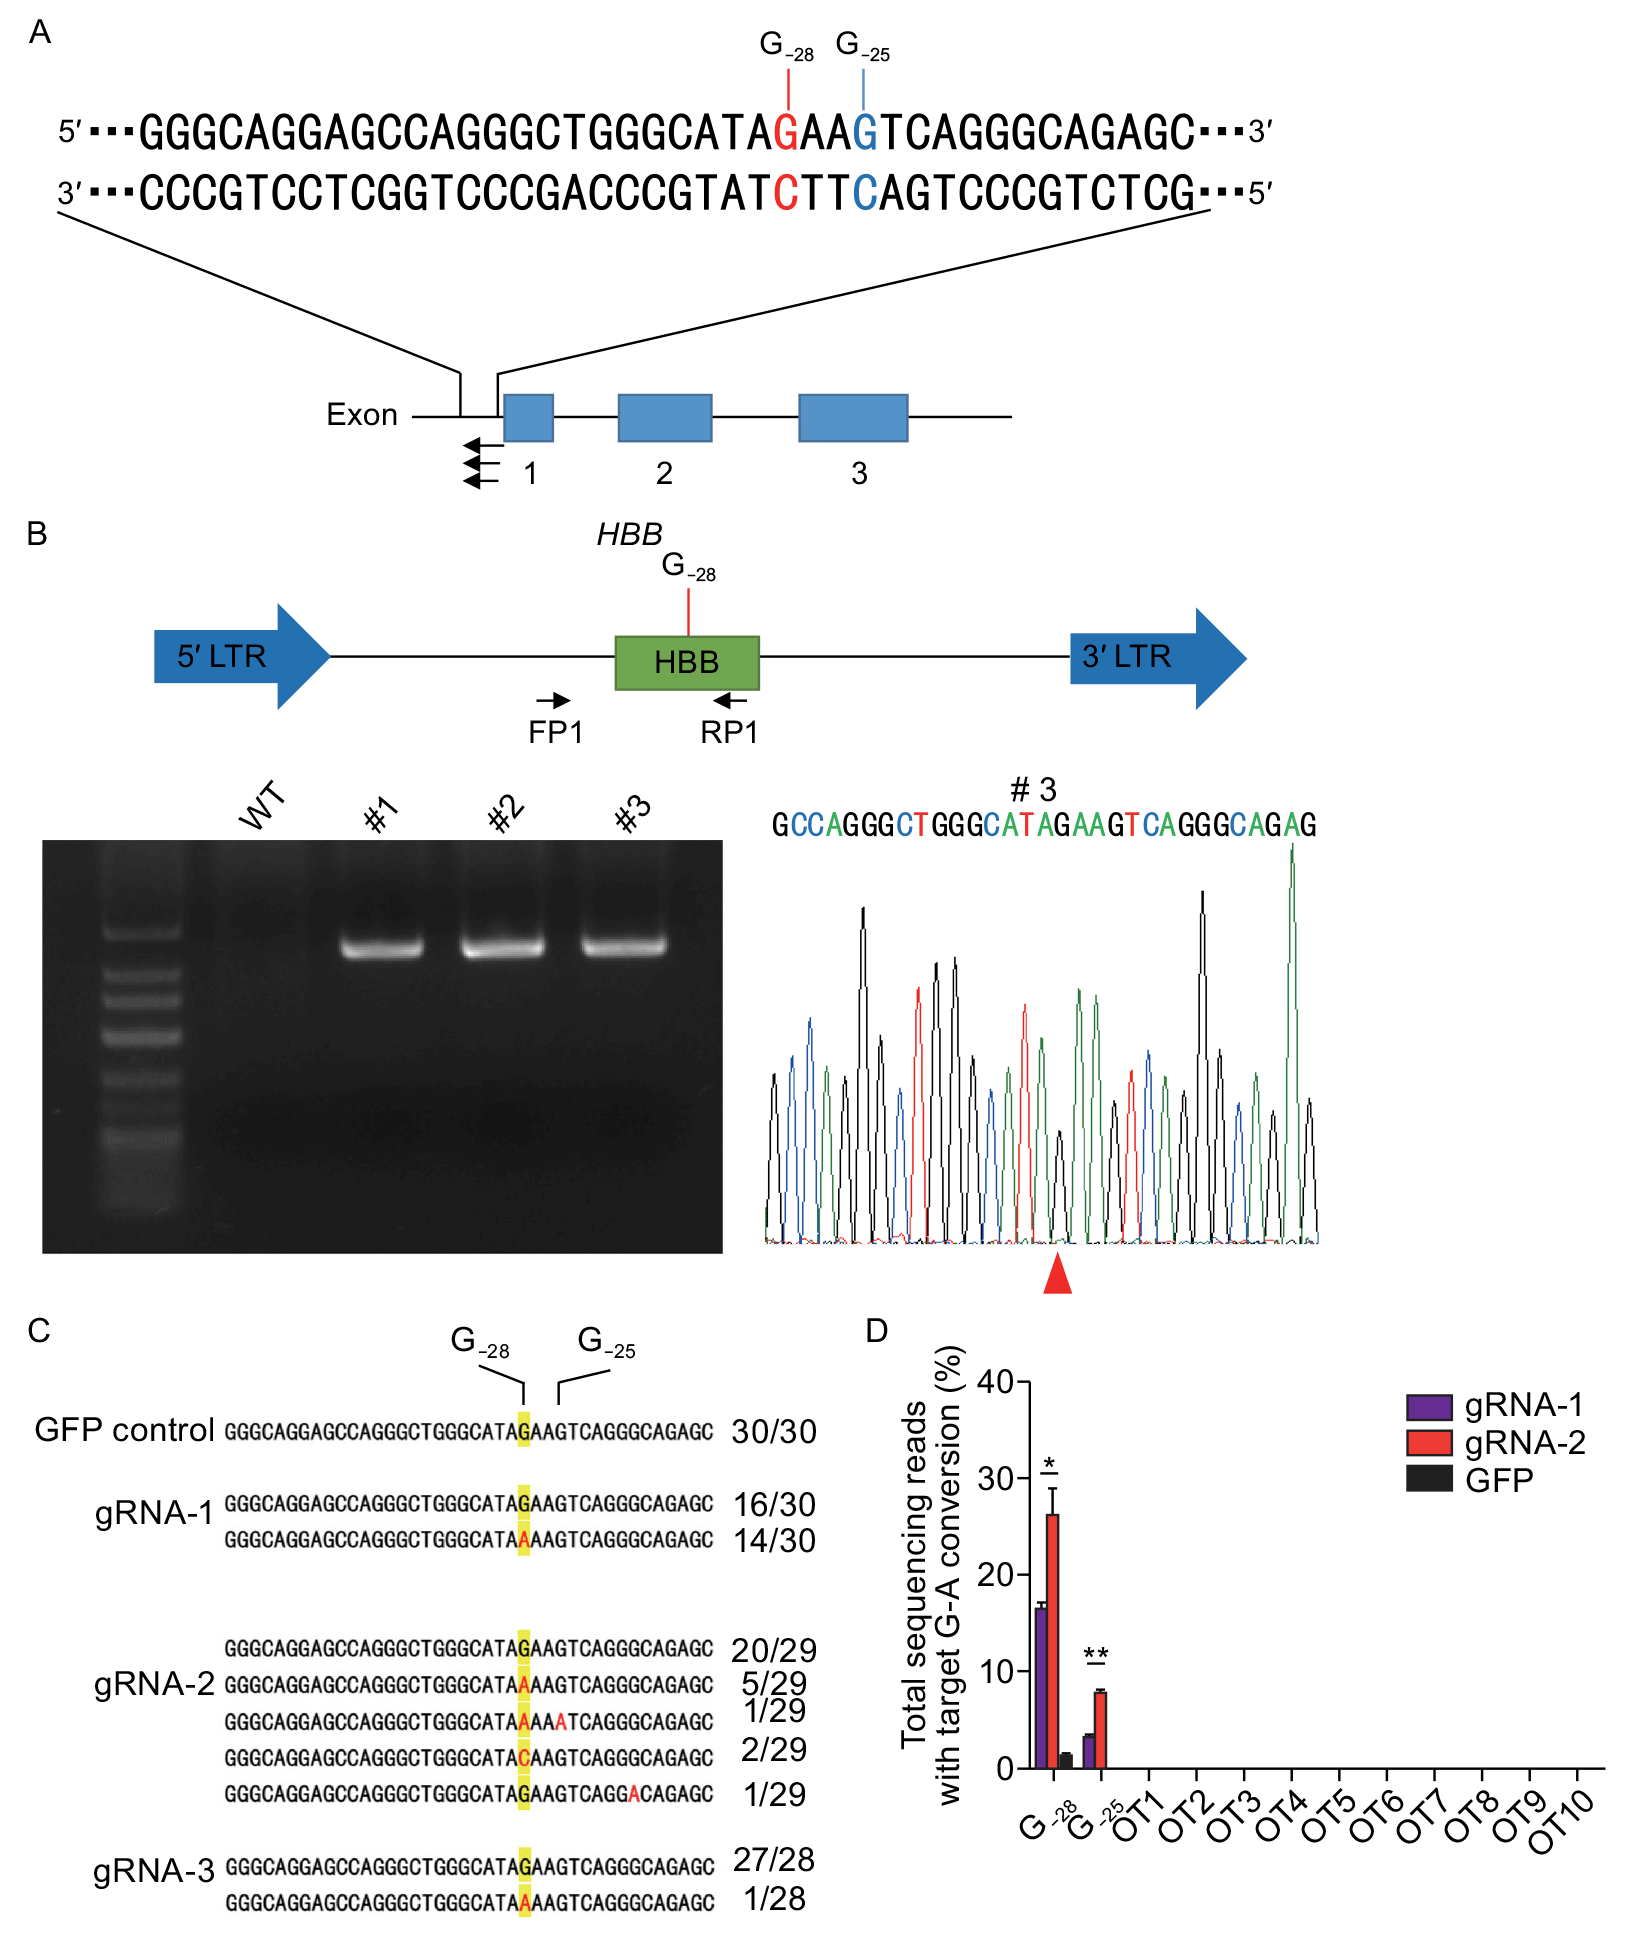 Устранение мутации A>G путём замены основания G на основание A в редакторе ДНК